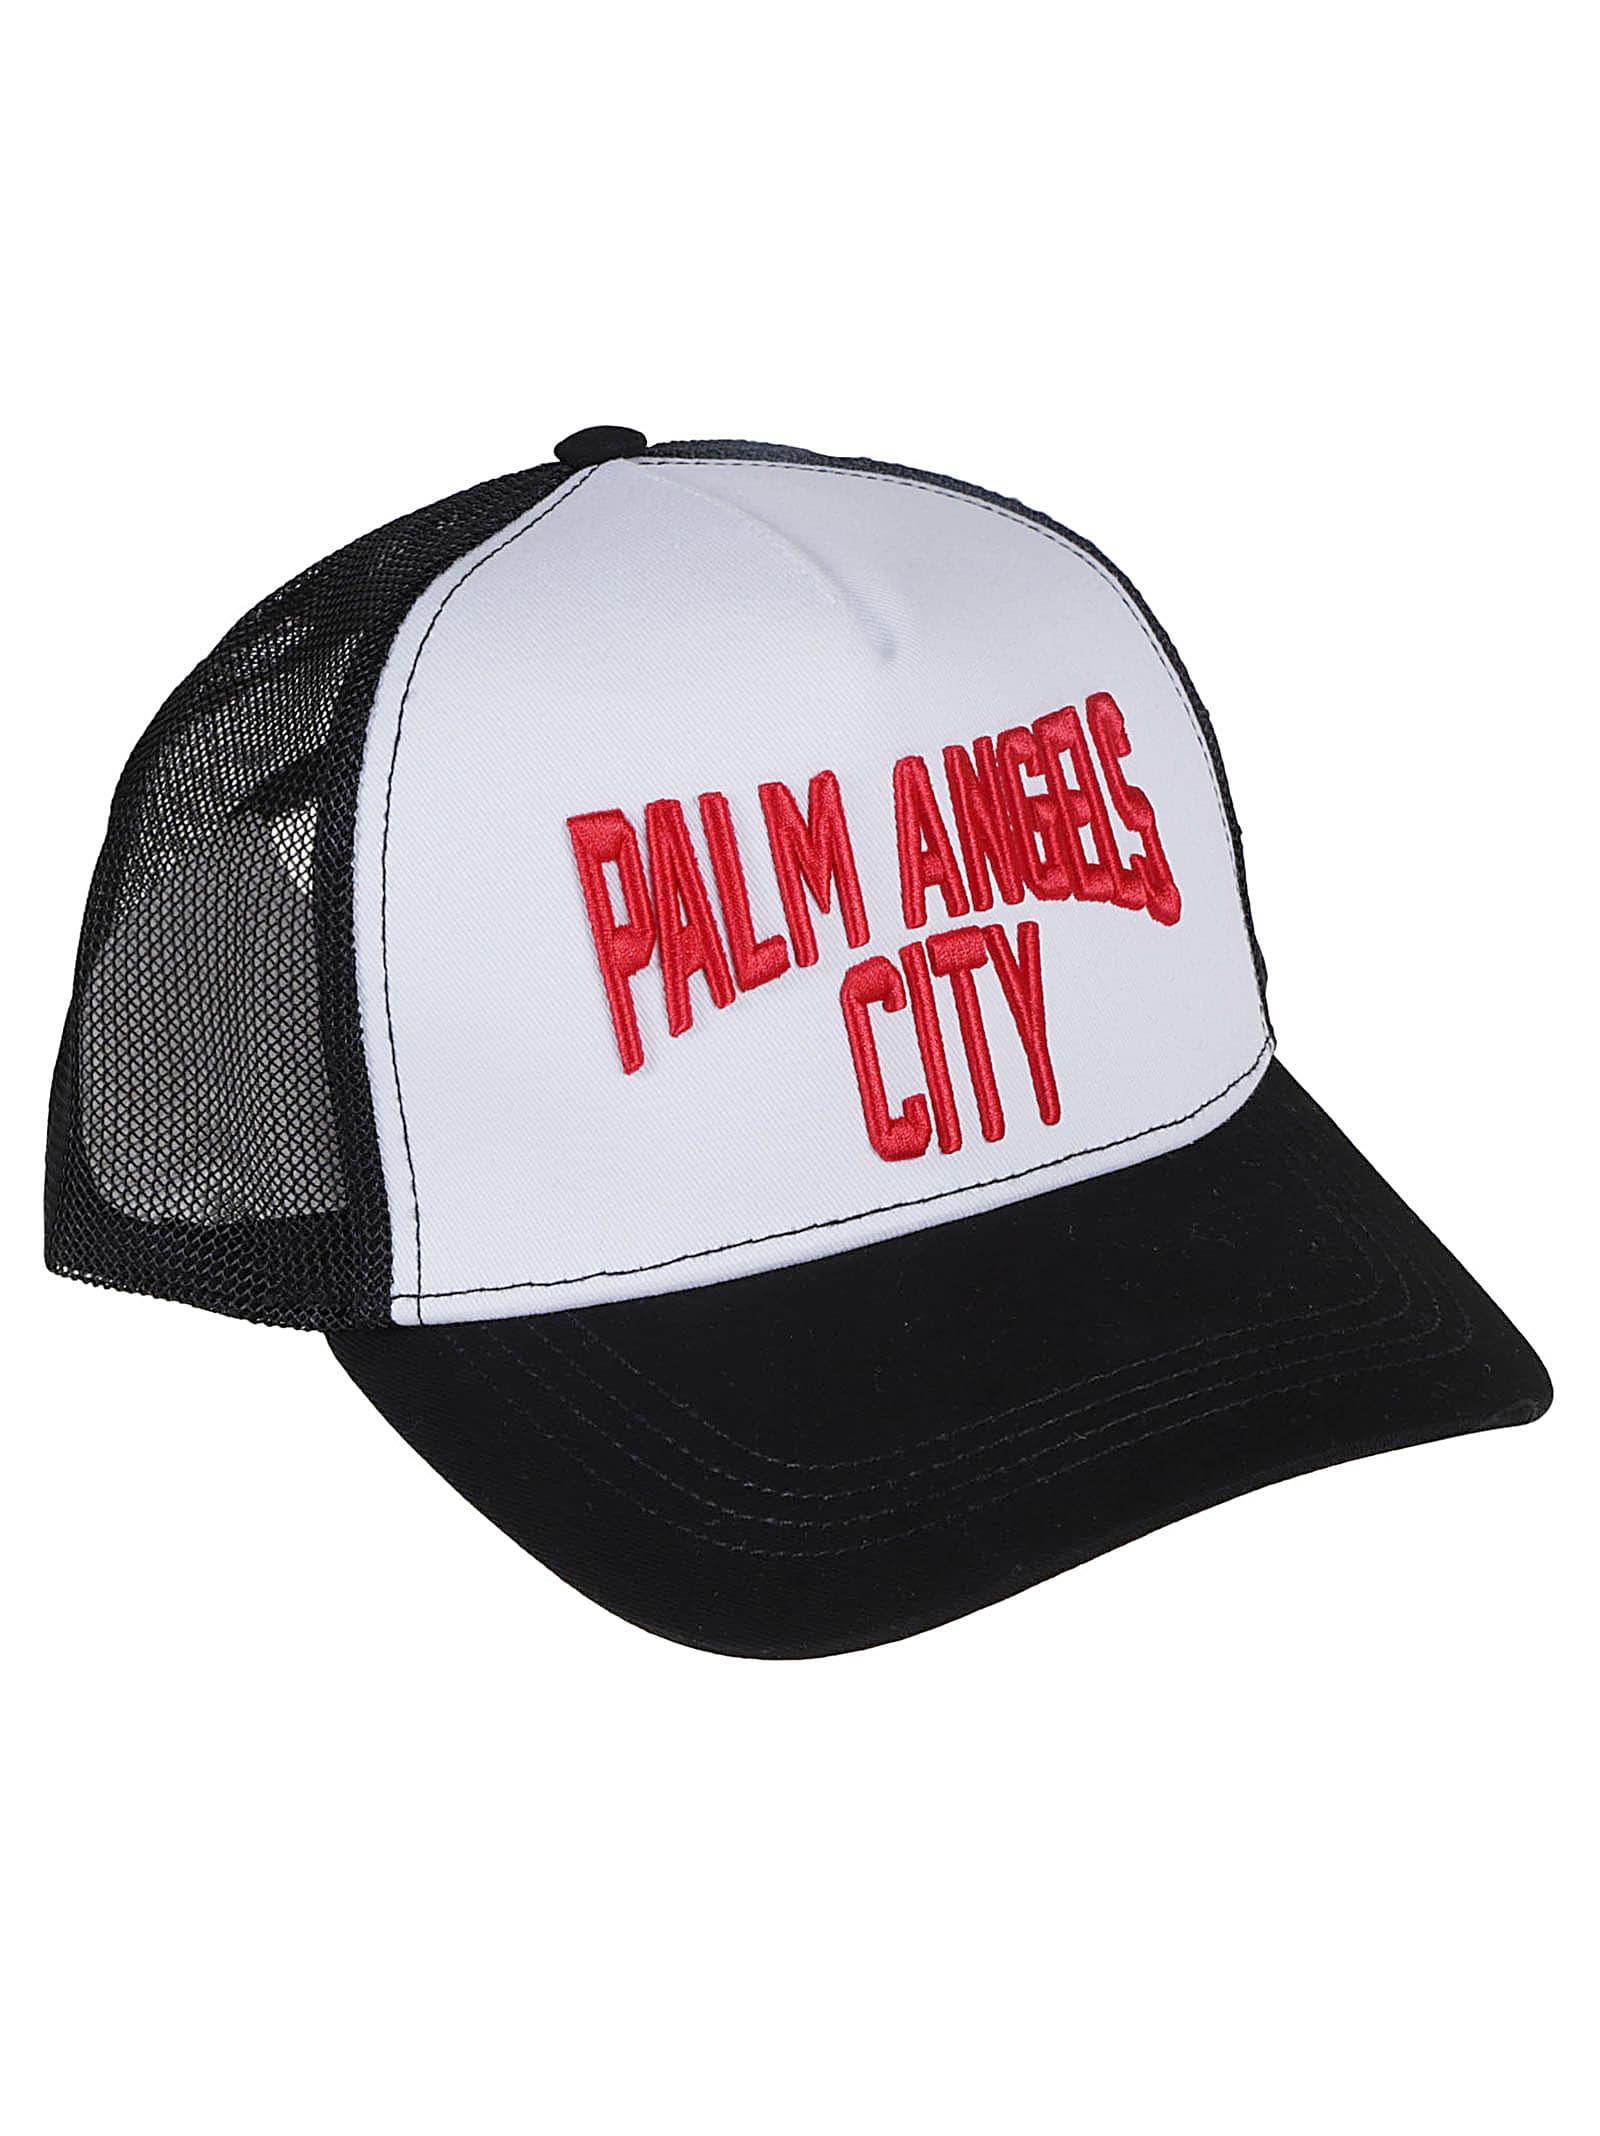 PALM ANGELS CITY CAP